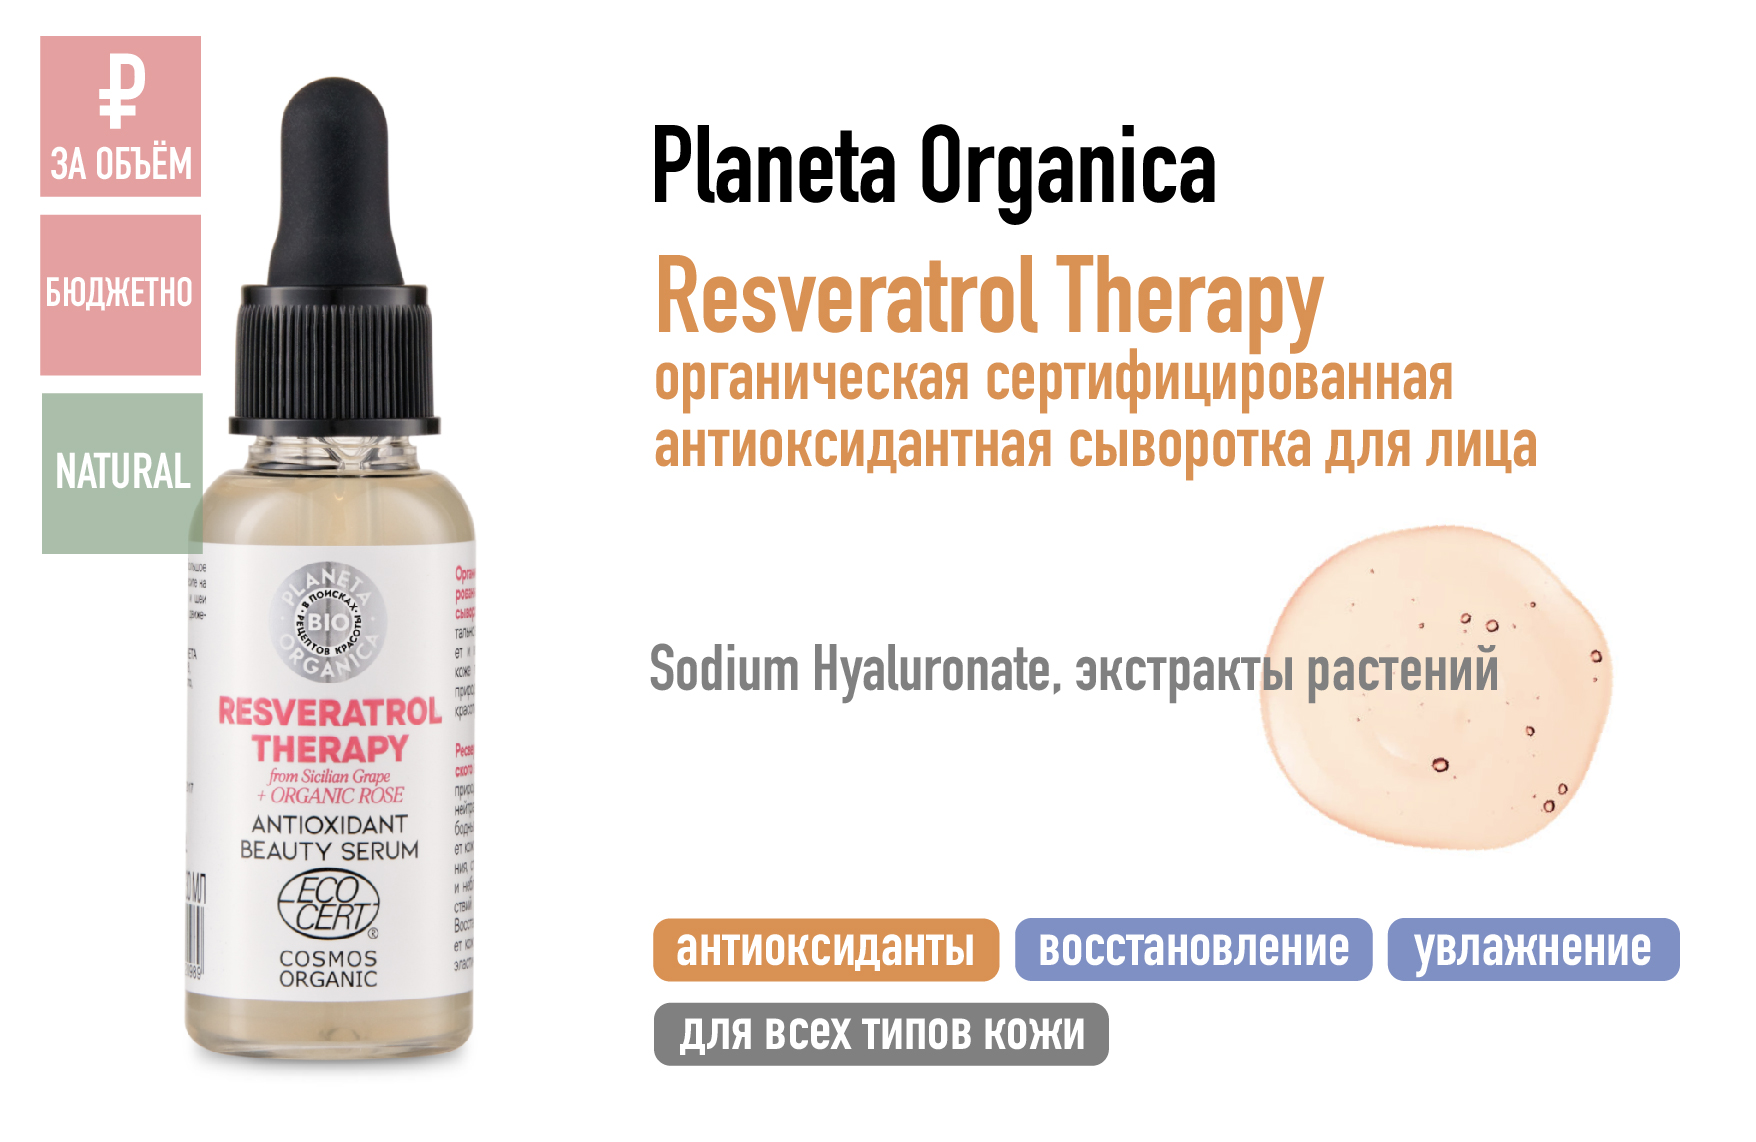 Planeta Organica Resveratrol Therapy / Органическая сертифицированная антиоксидантная сыворотка для лица